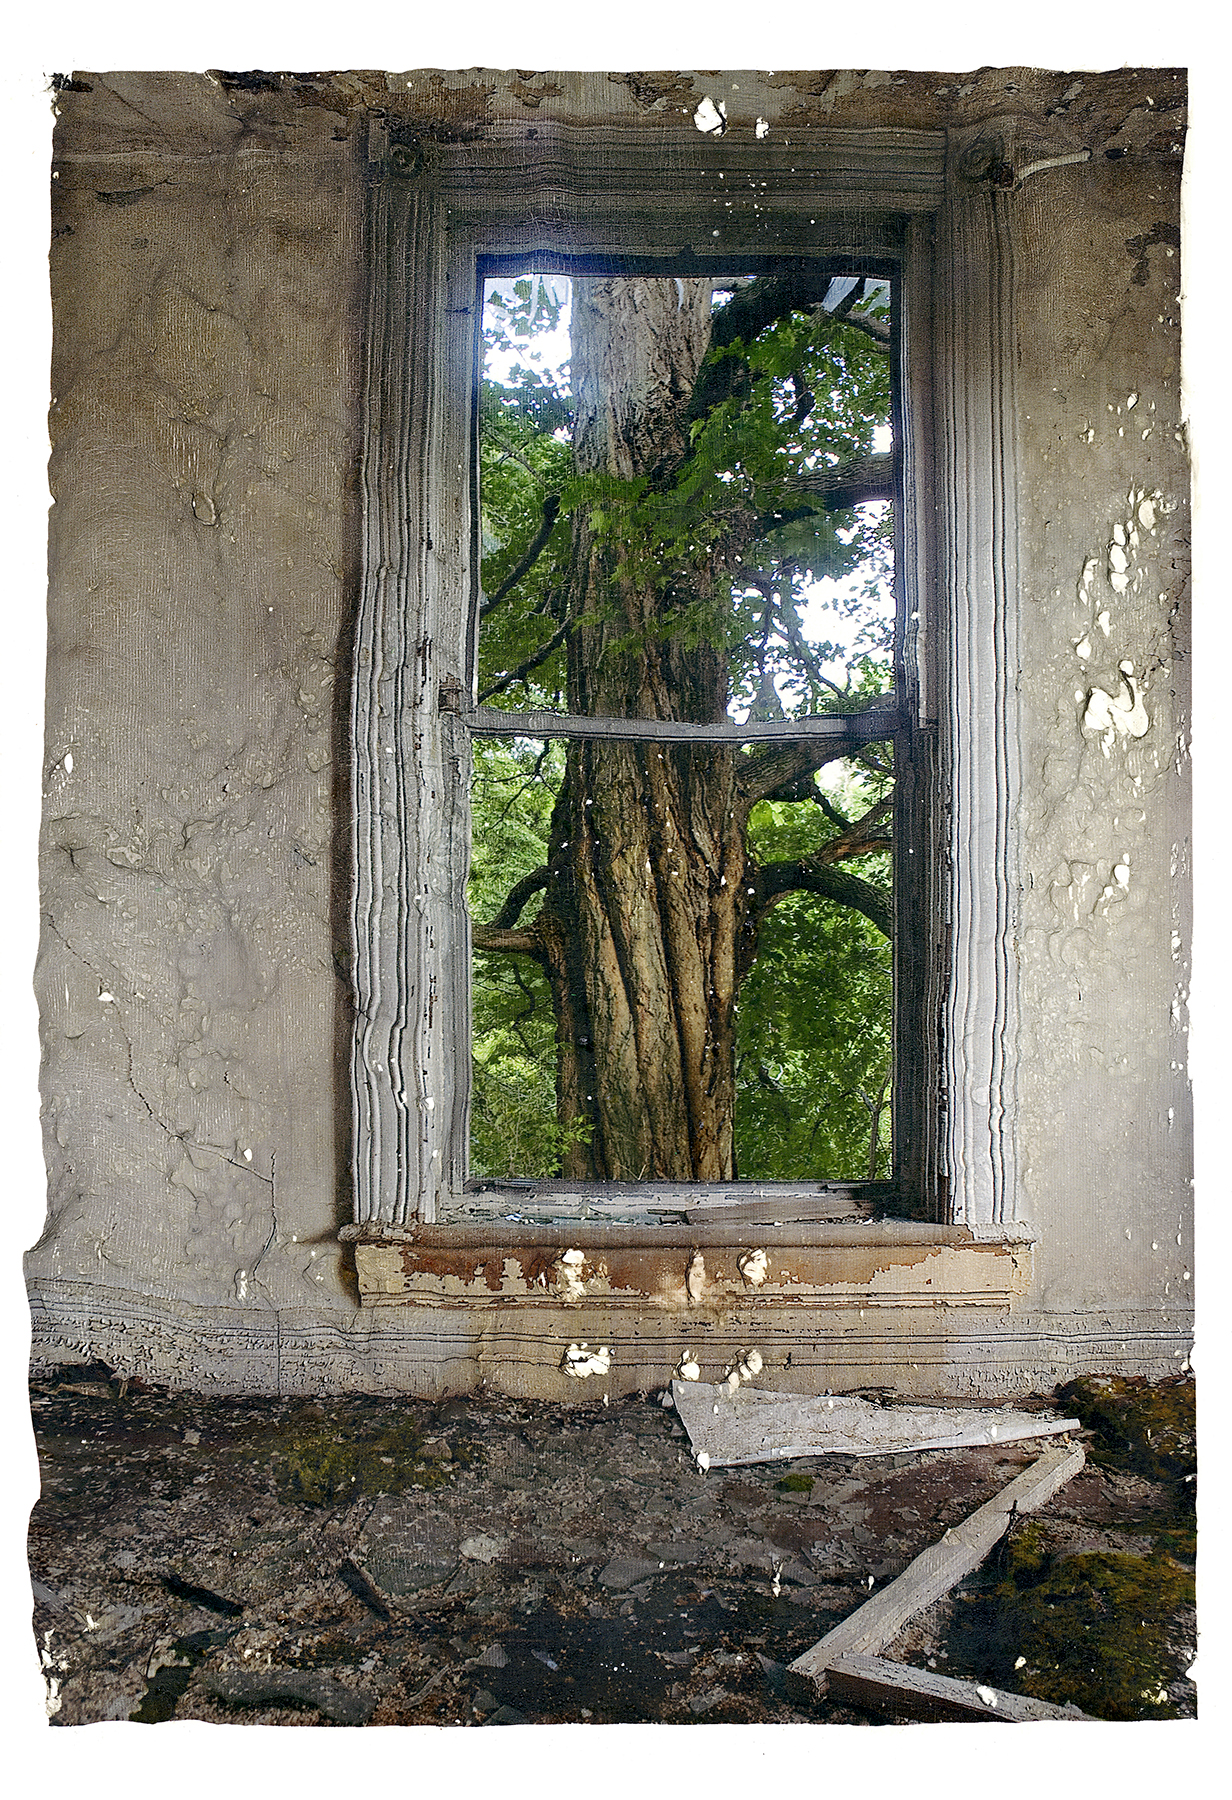 Tree and window